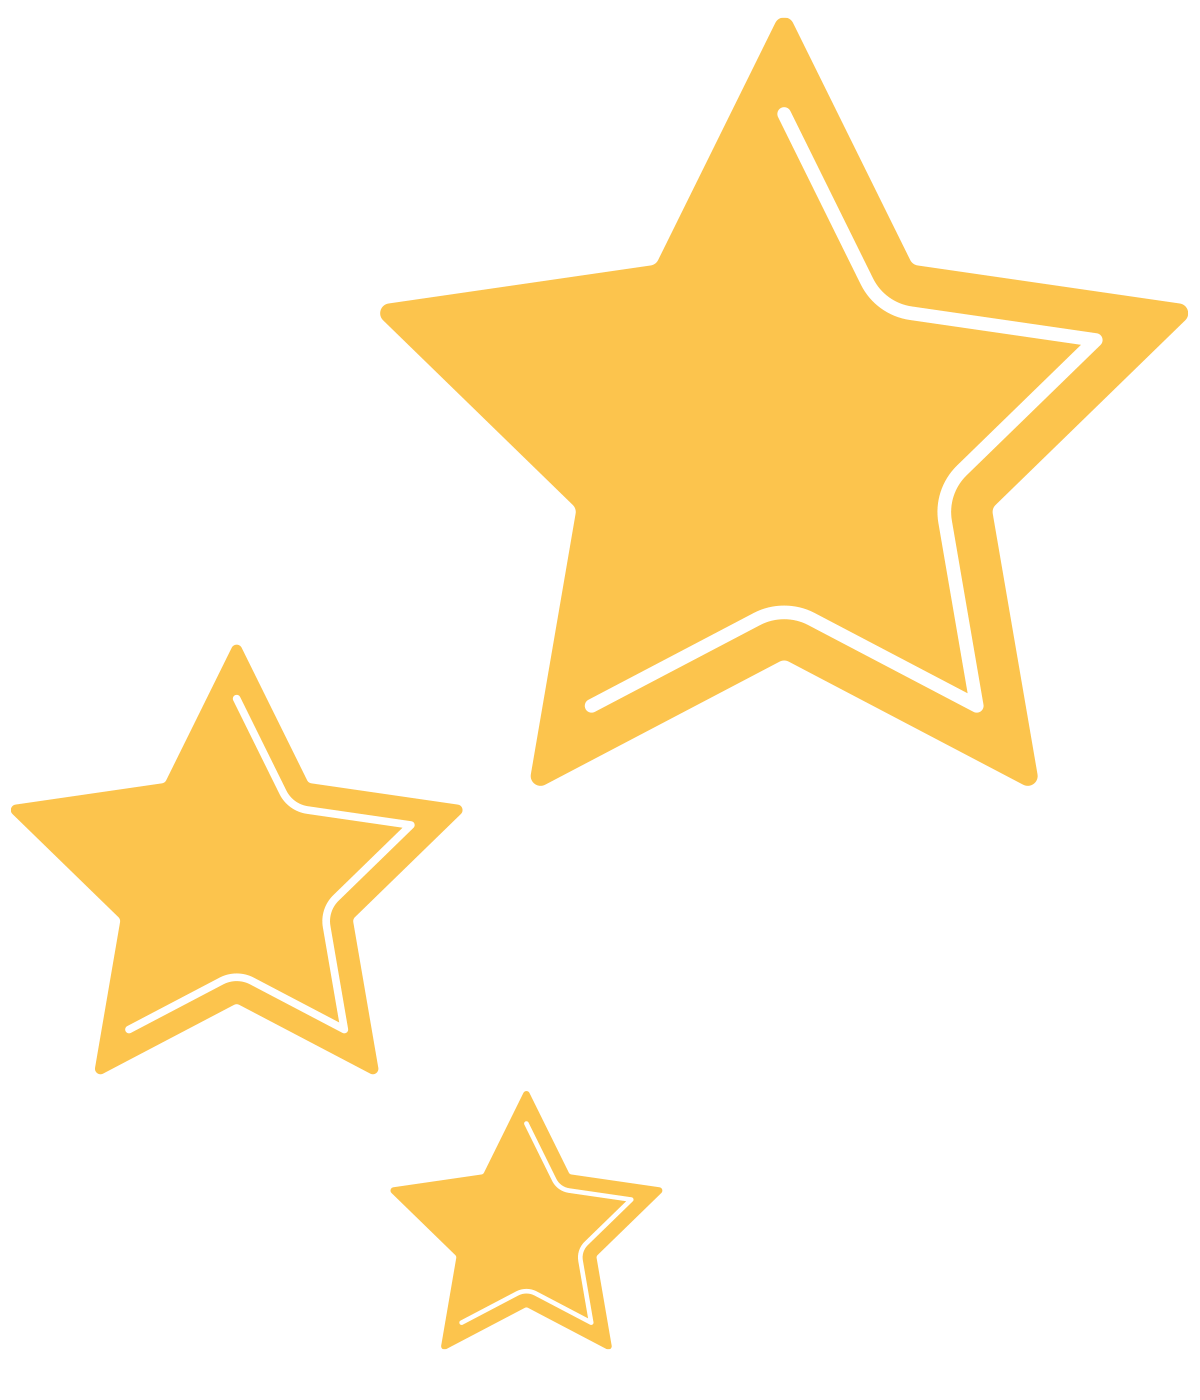 Illustration of three large yellow stars